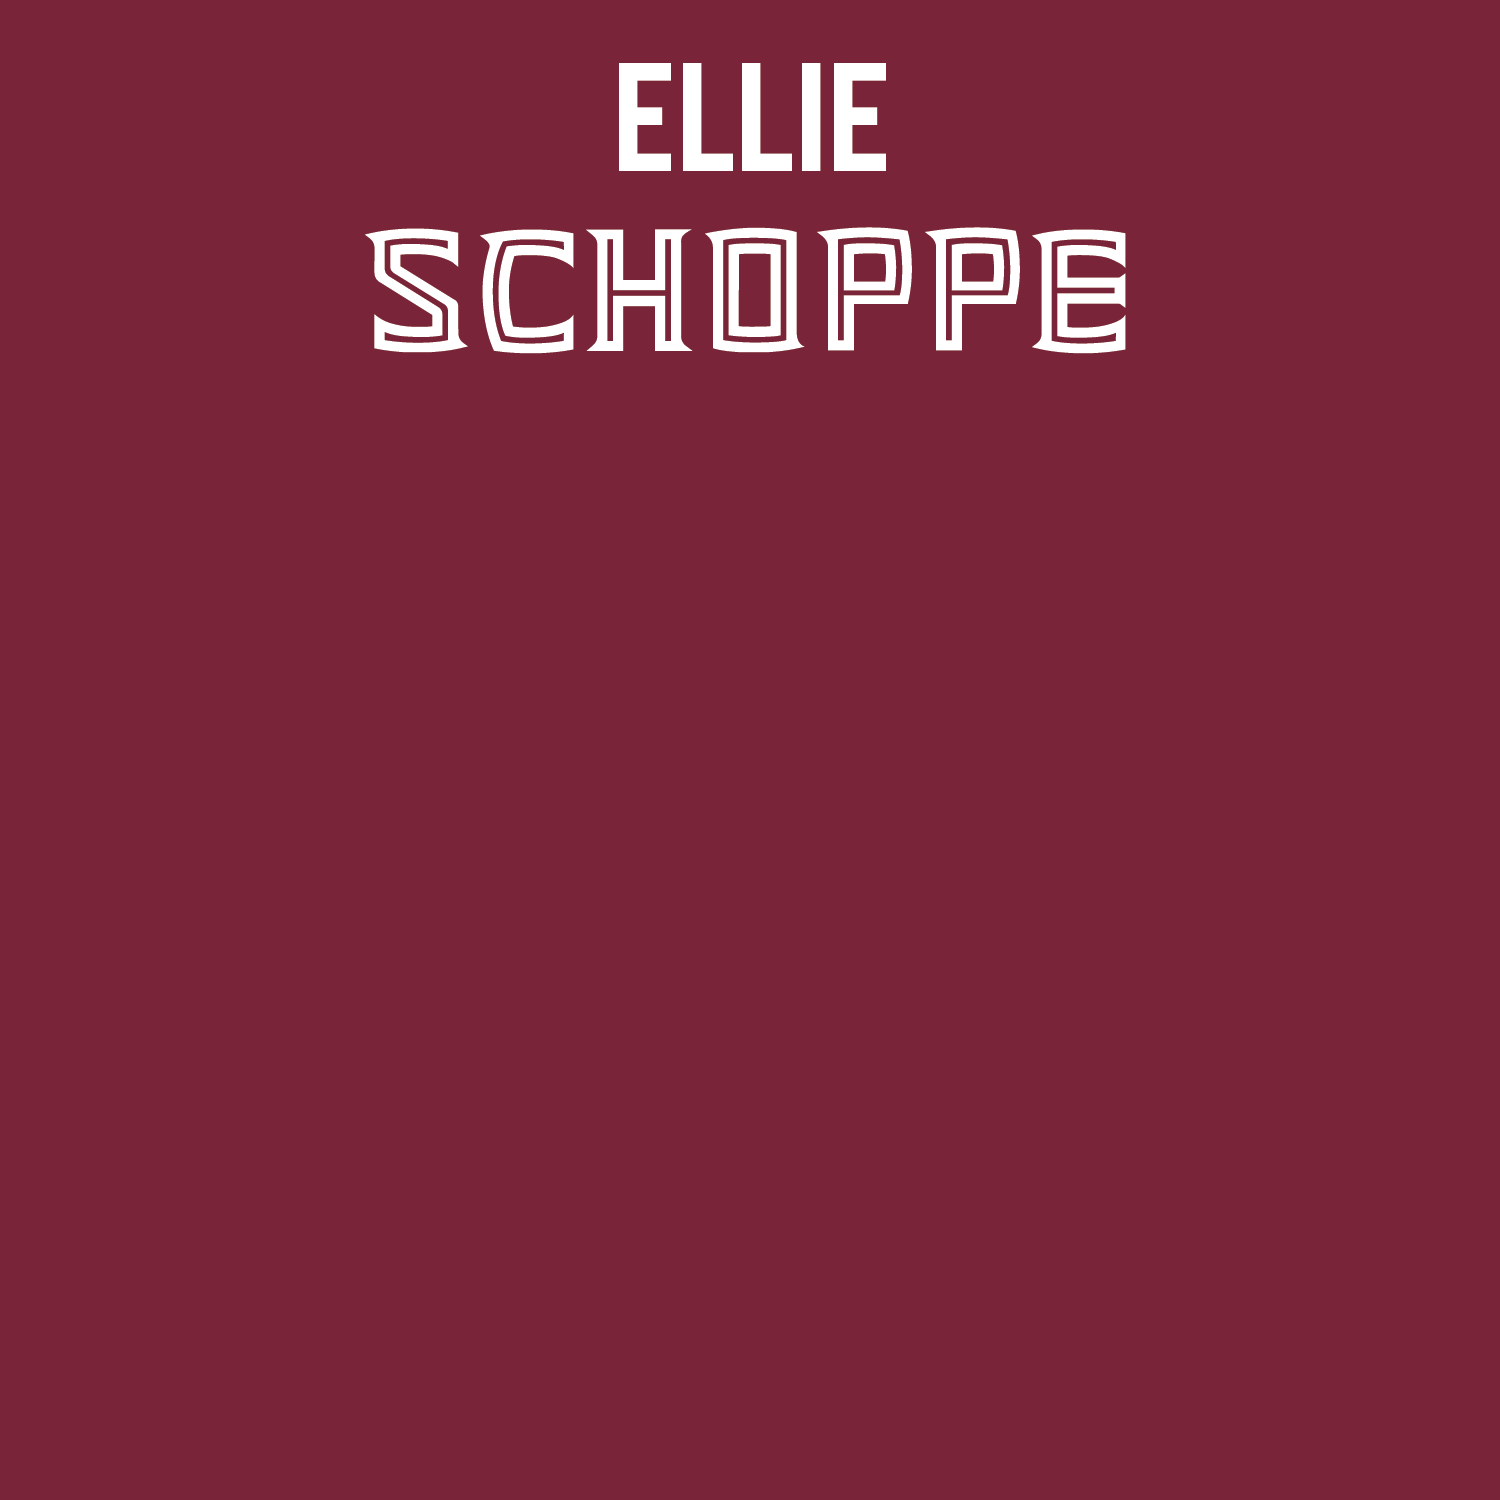 Ellie Schoppe